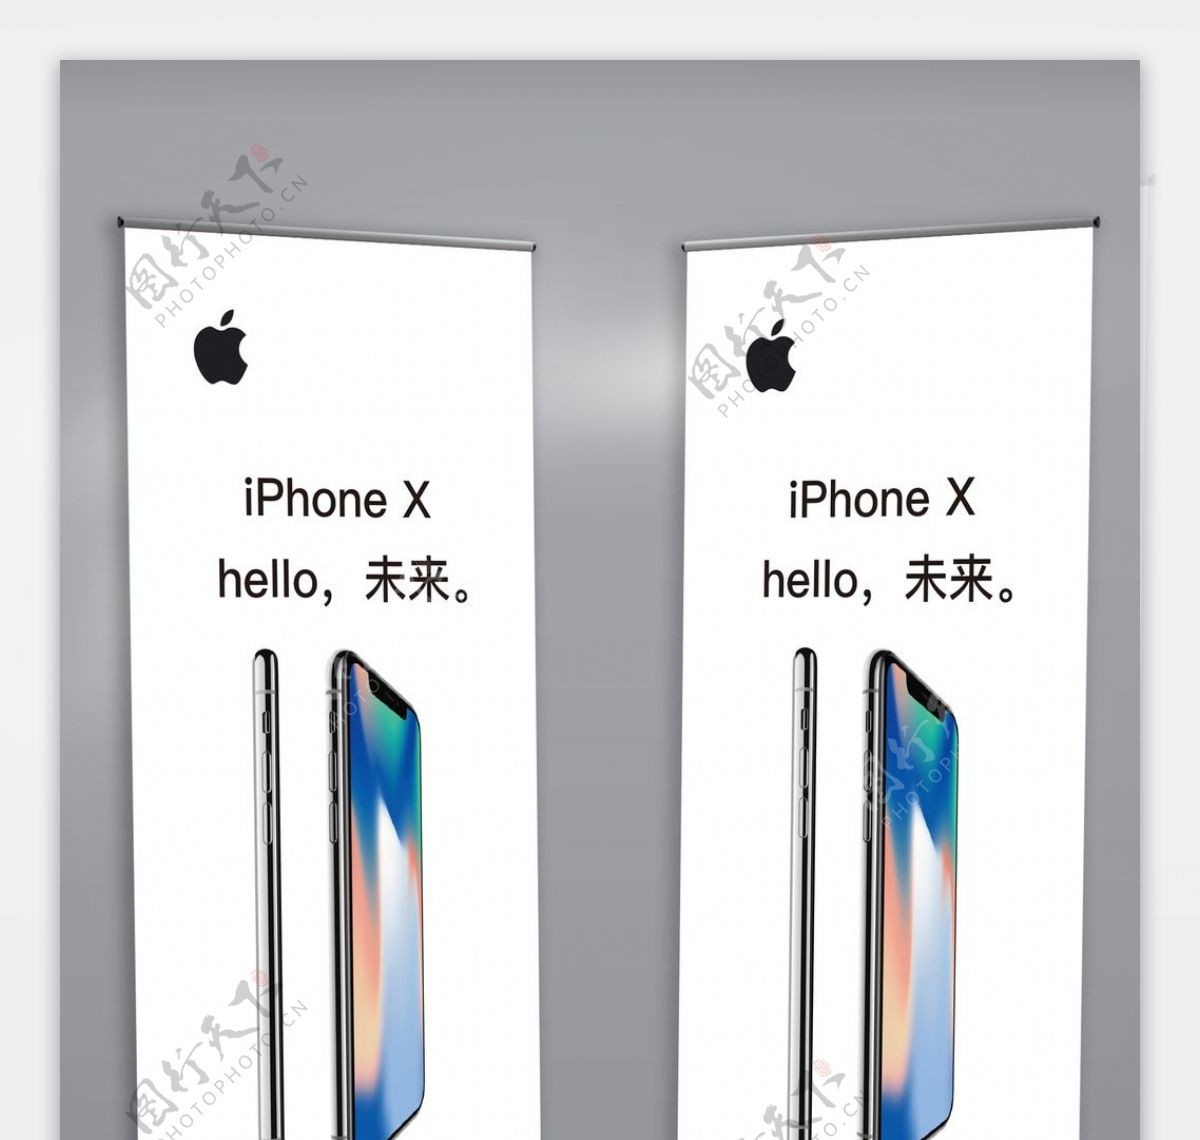 苹果官方iPhone8X展架易拉宝展架